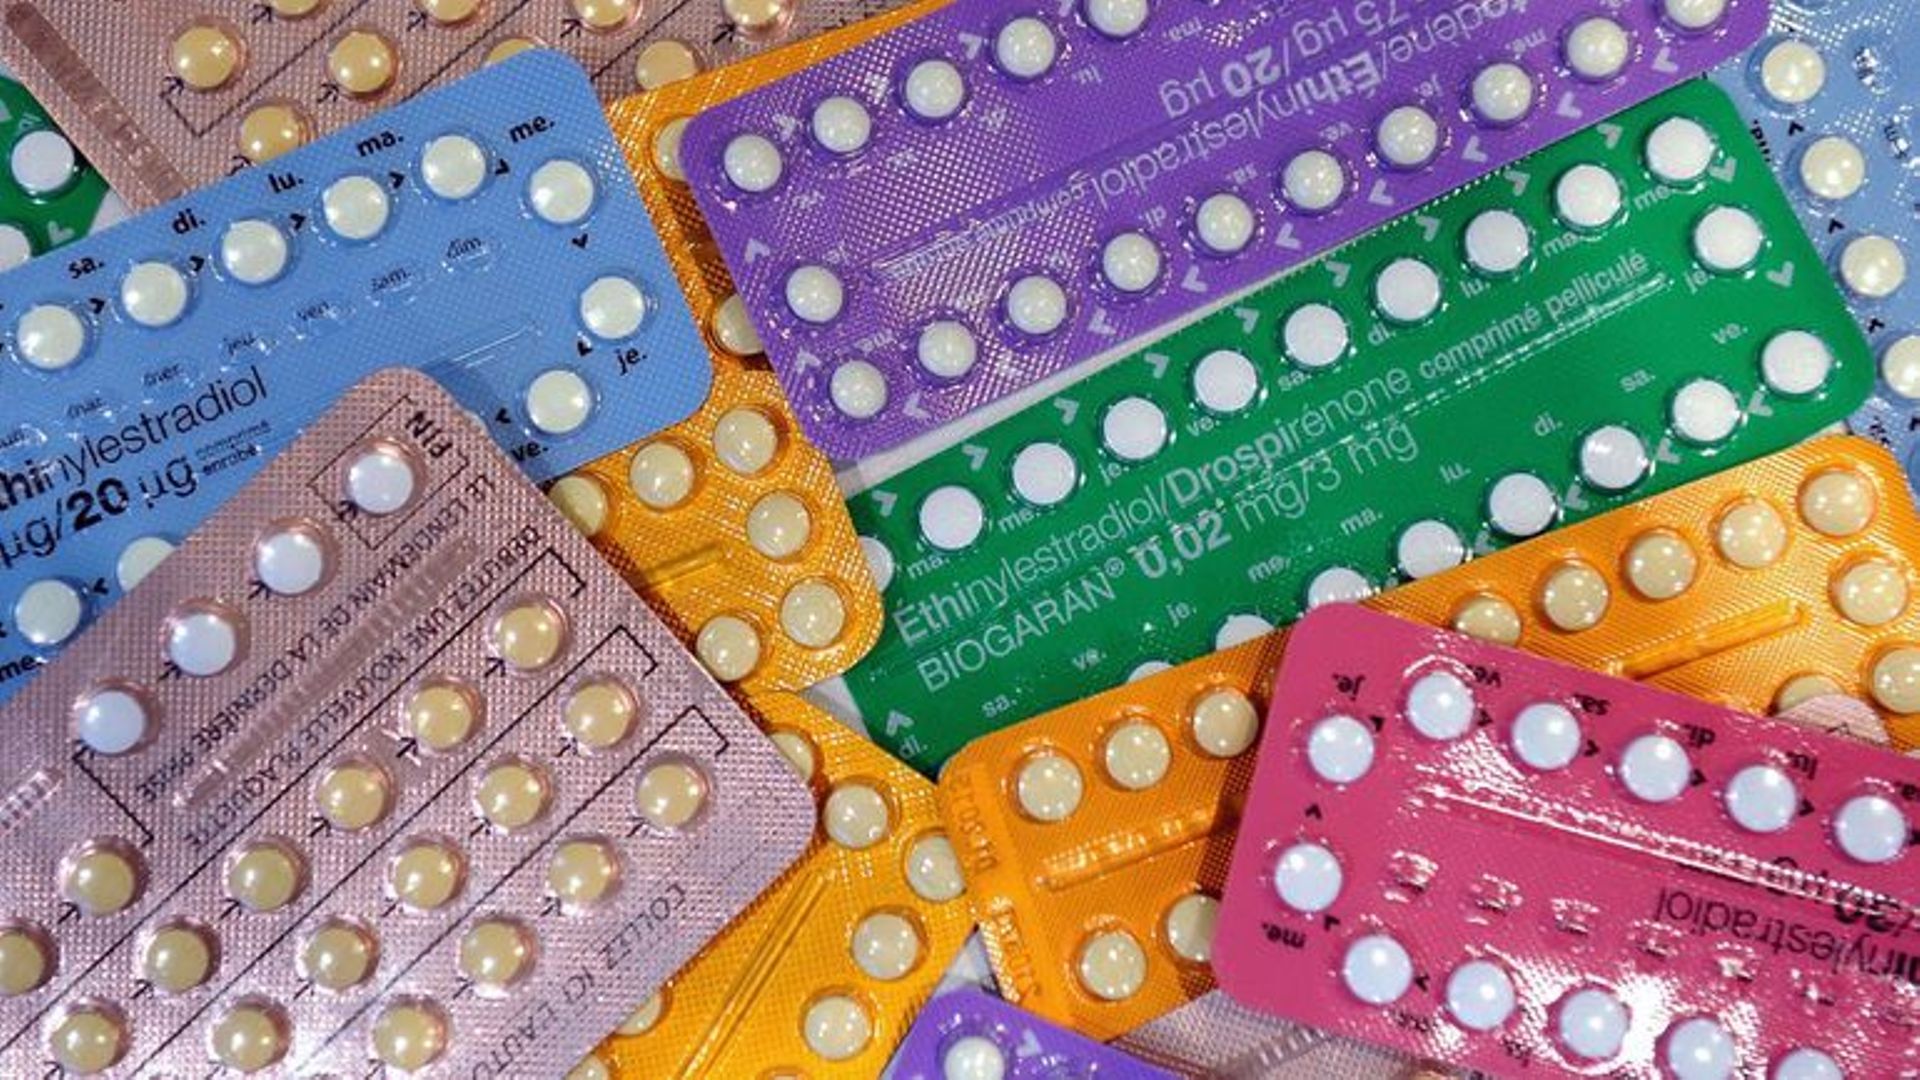 Le ministre français de la Santé a annoncé la gratuité de la contraception pour les femmes jusqu'à 25 ans.